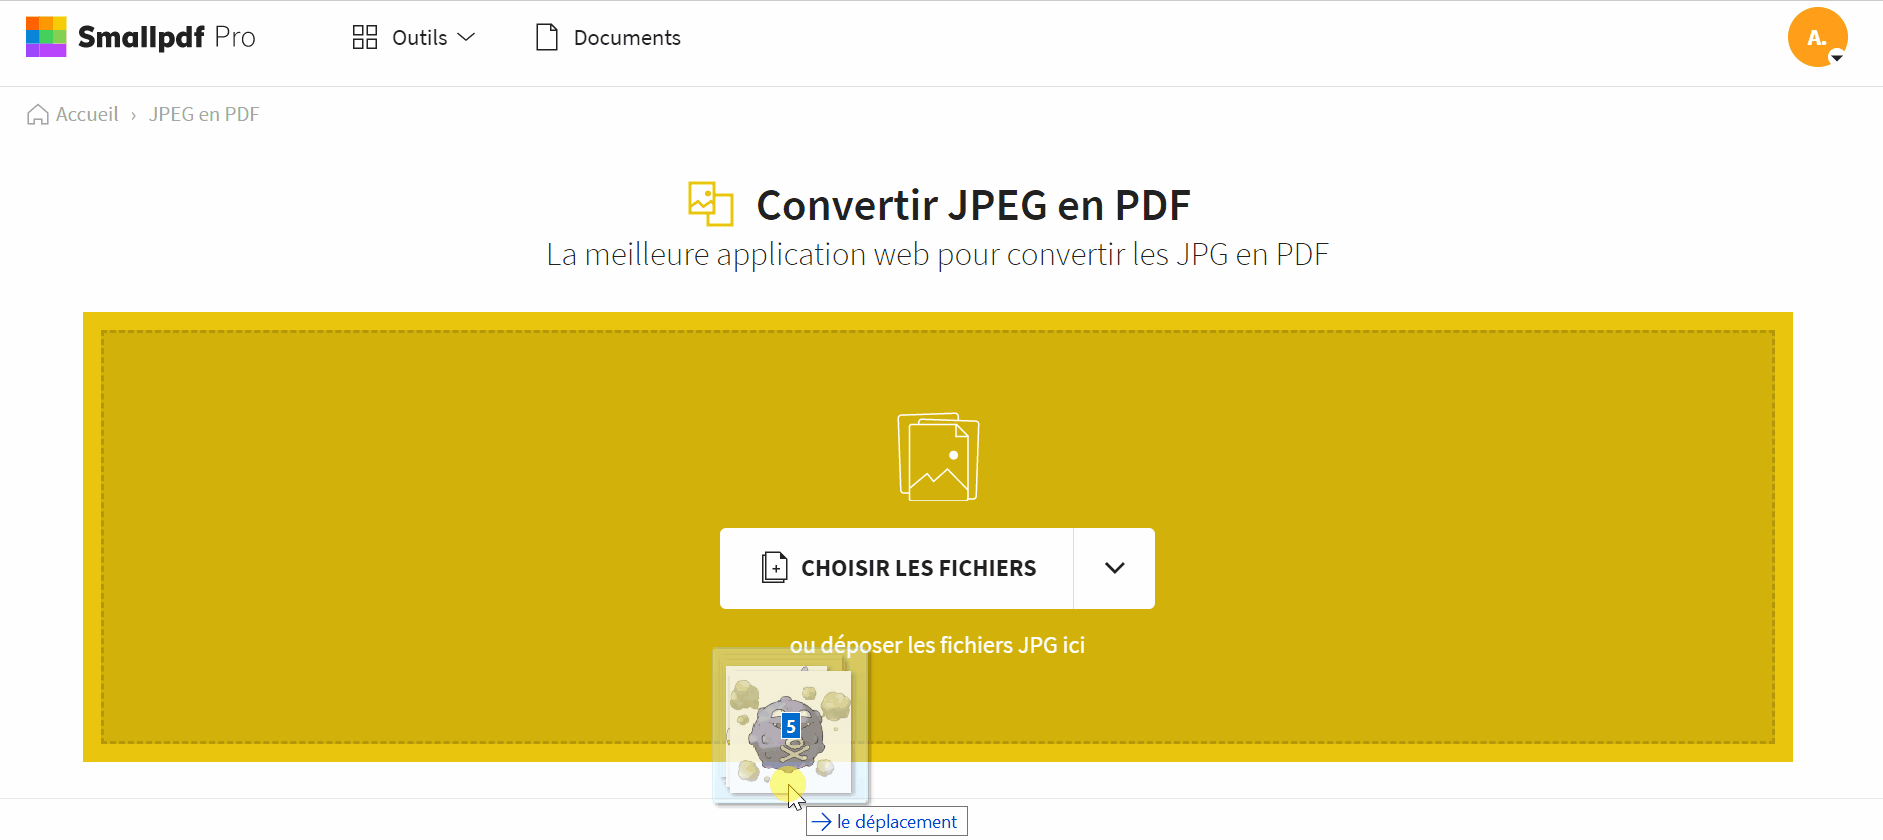 2019-10-25 - Convertir une image TIFF au format PDF gratuitement en ligne - outil JPEG en PDF sur Smallpdf, convertir plusieurs images en un PDF